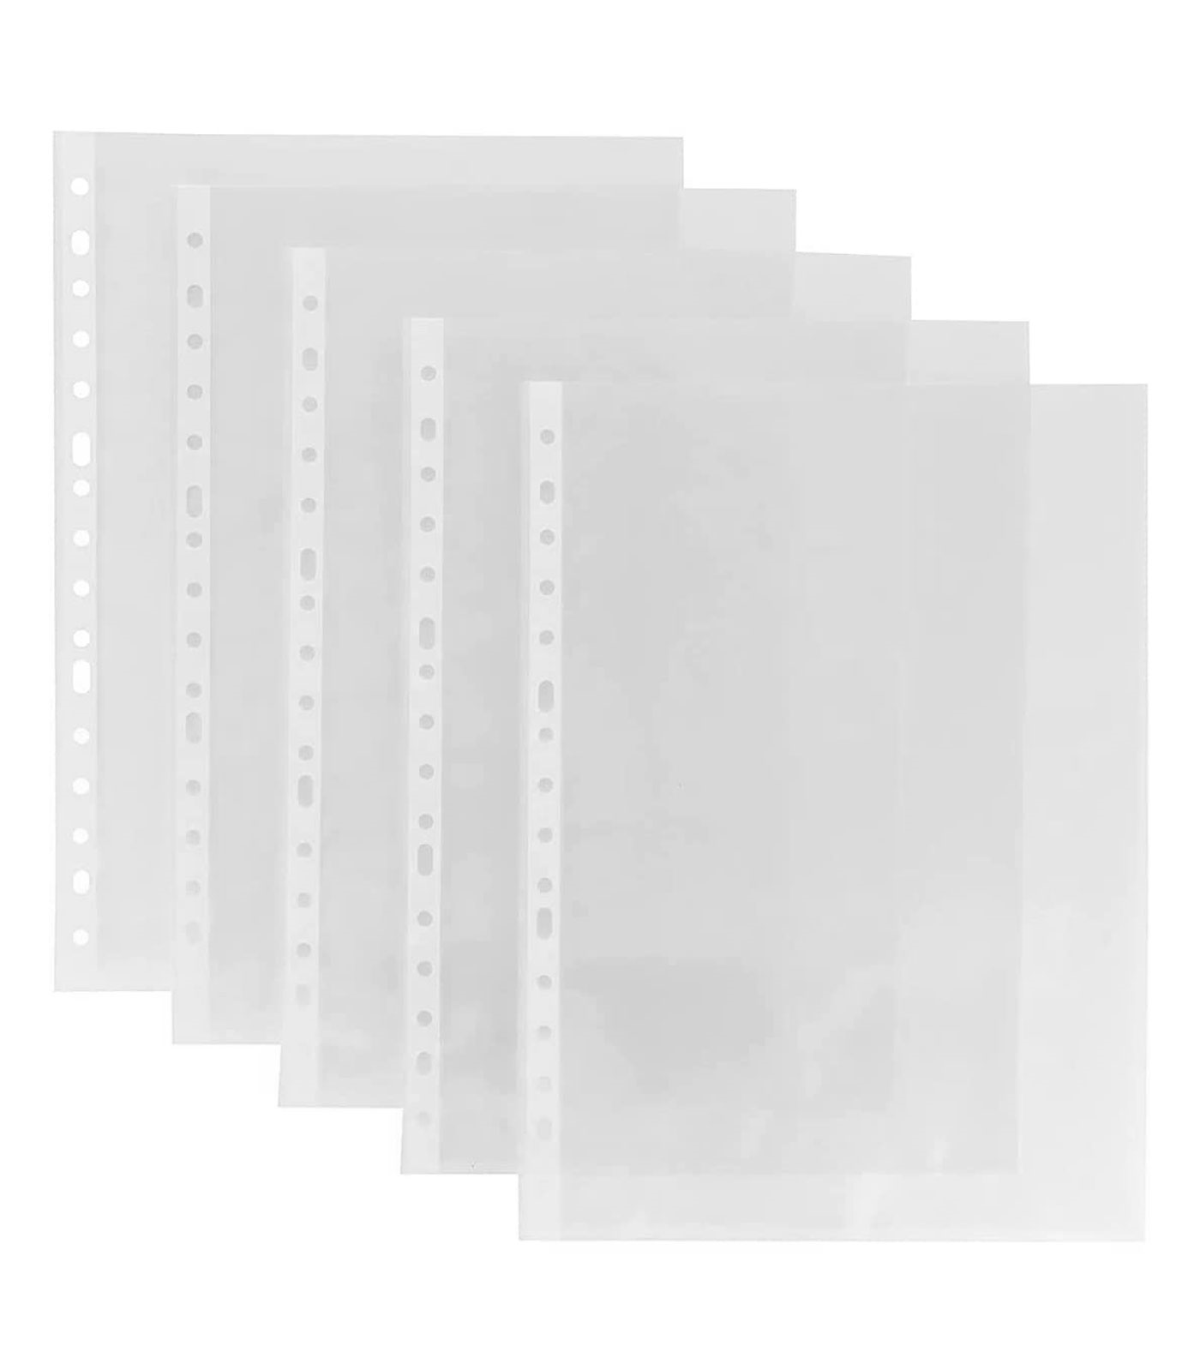 Tradineur - Pack de 100 fundas de plástico transparente A4